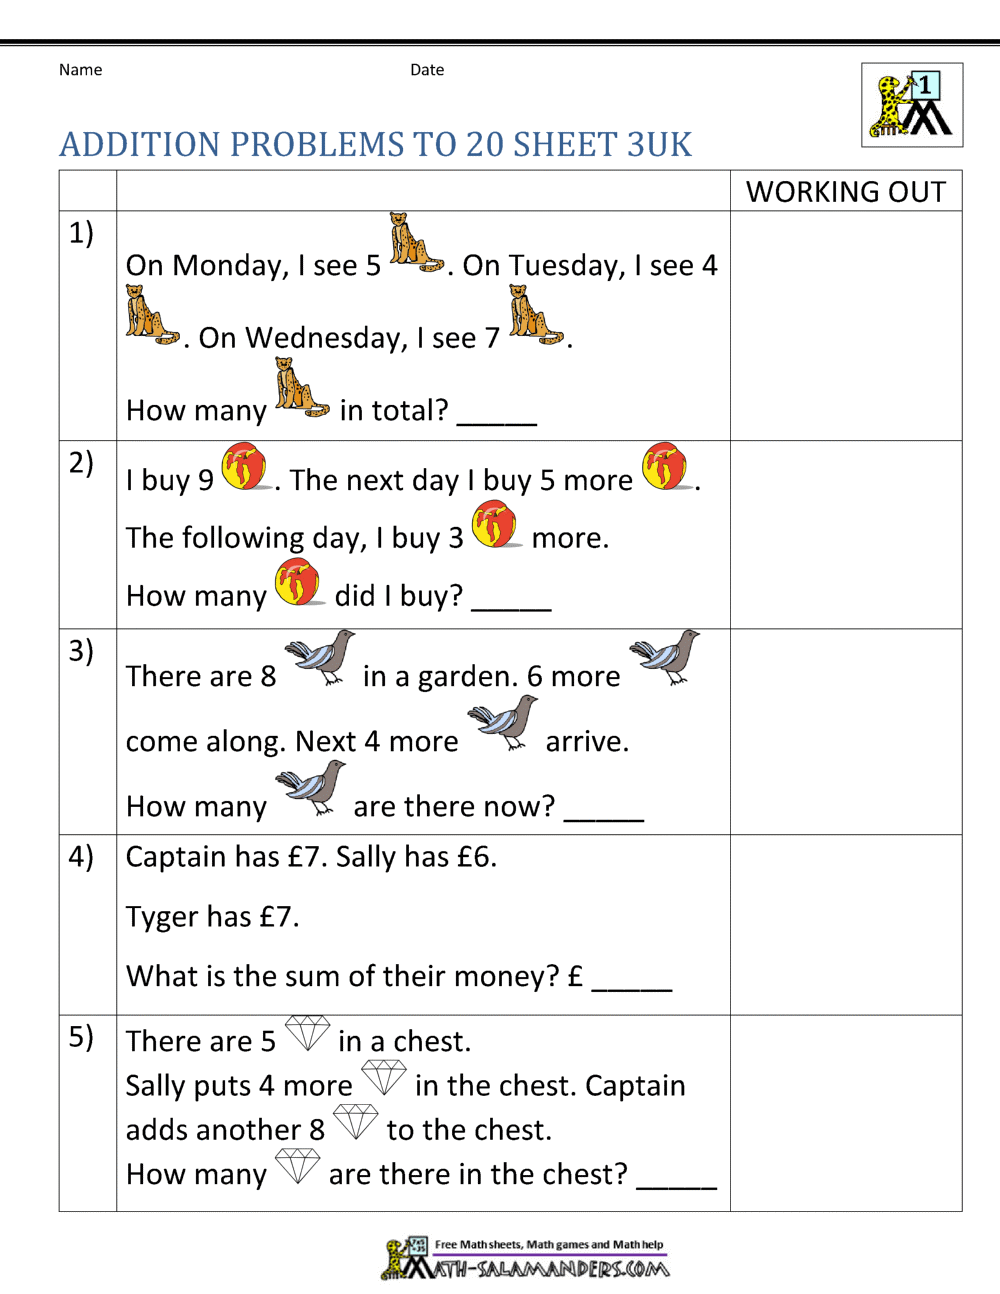 year 1 addition word problems to 20 3uk - Kindergarten Addition Word Problems